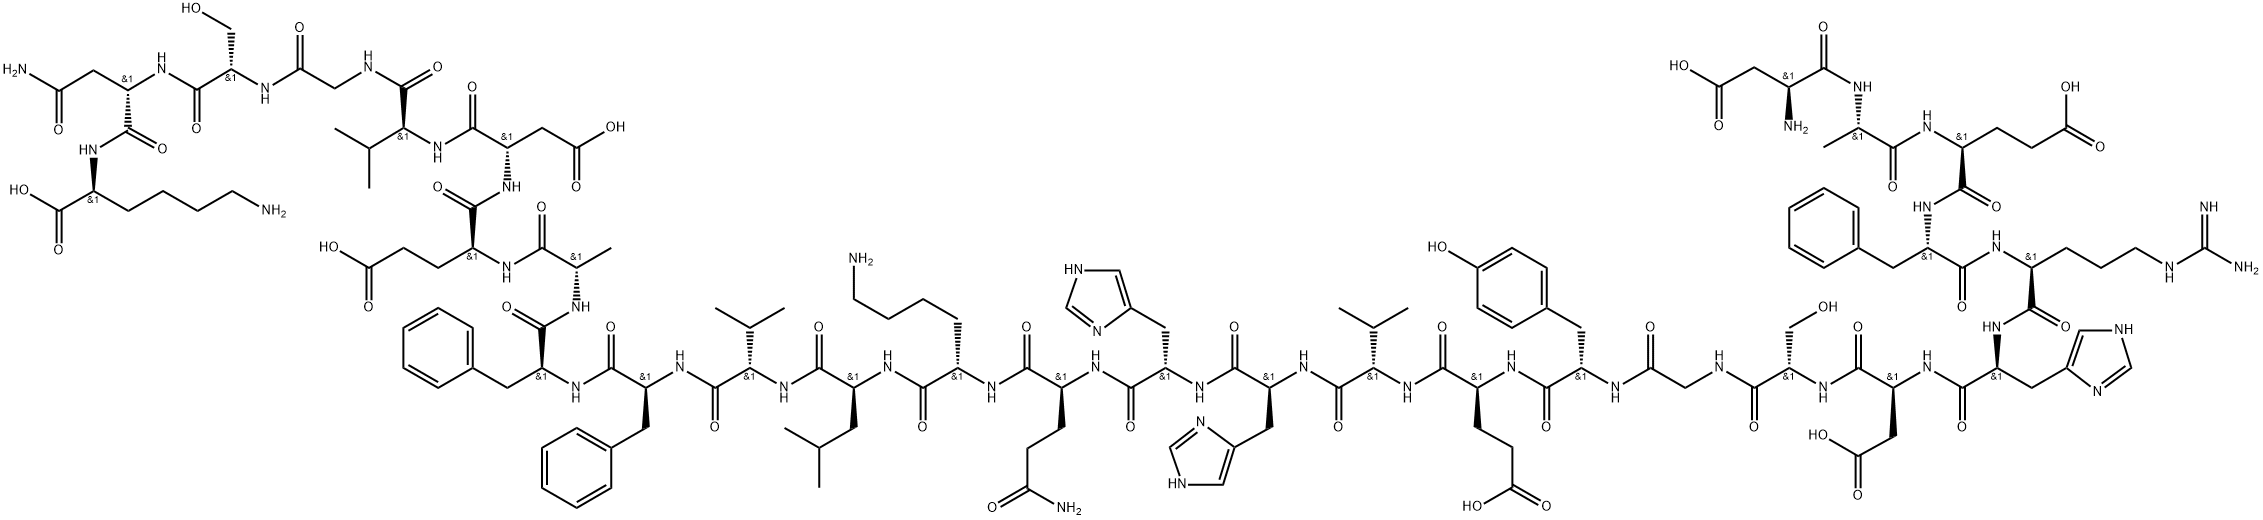 アミロイドΒ-プロテイン (1-28) 化学構造式